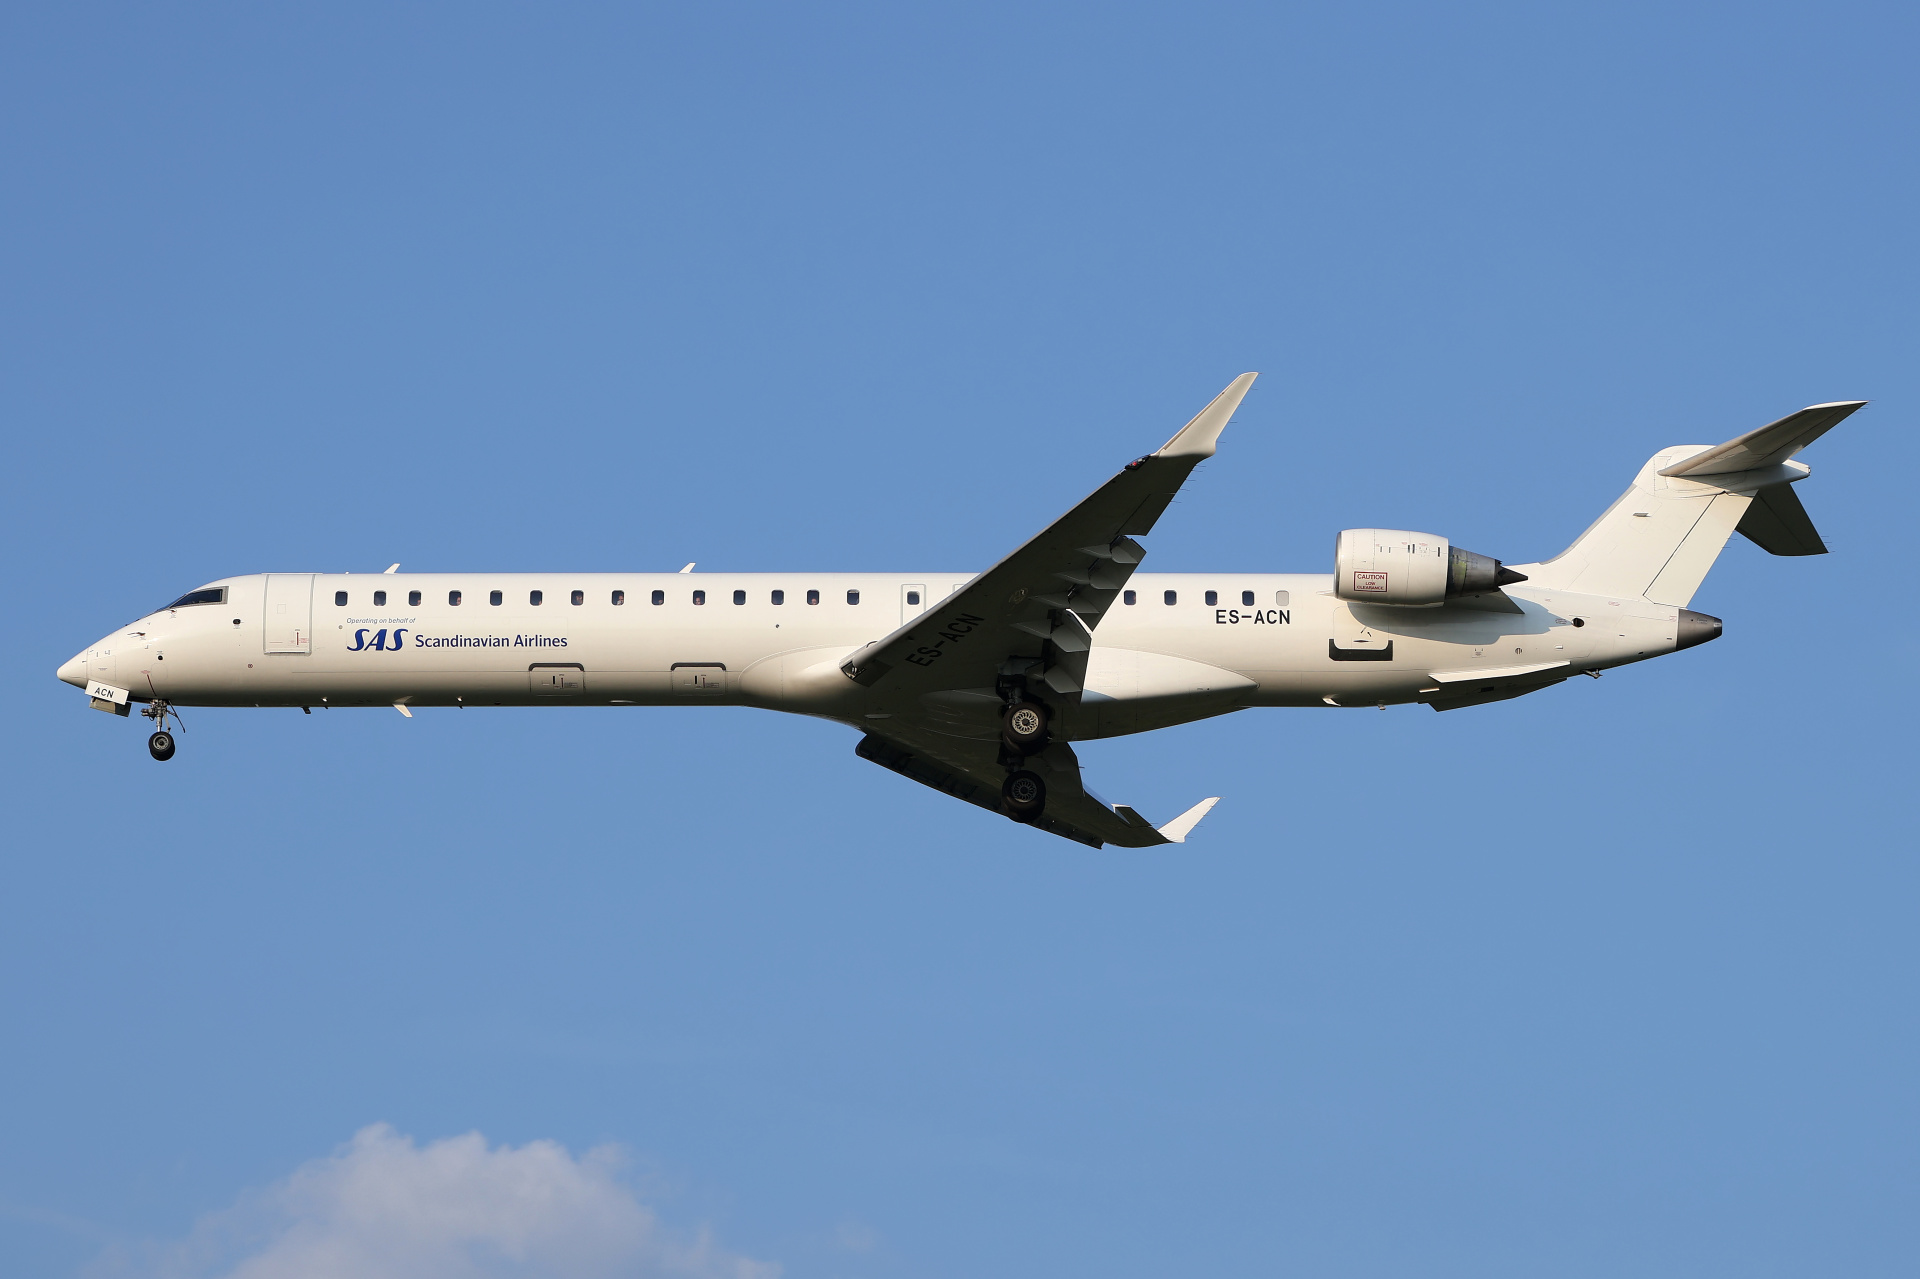 ES-ACN (Aircraft » EPWA Spotting » Mitsubishi Regional Jet » CRJ-900 » SAS Scandinavian Airlines)